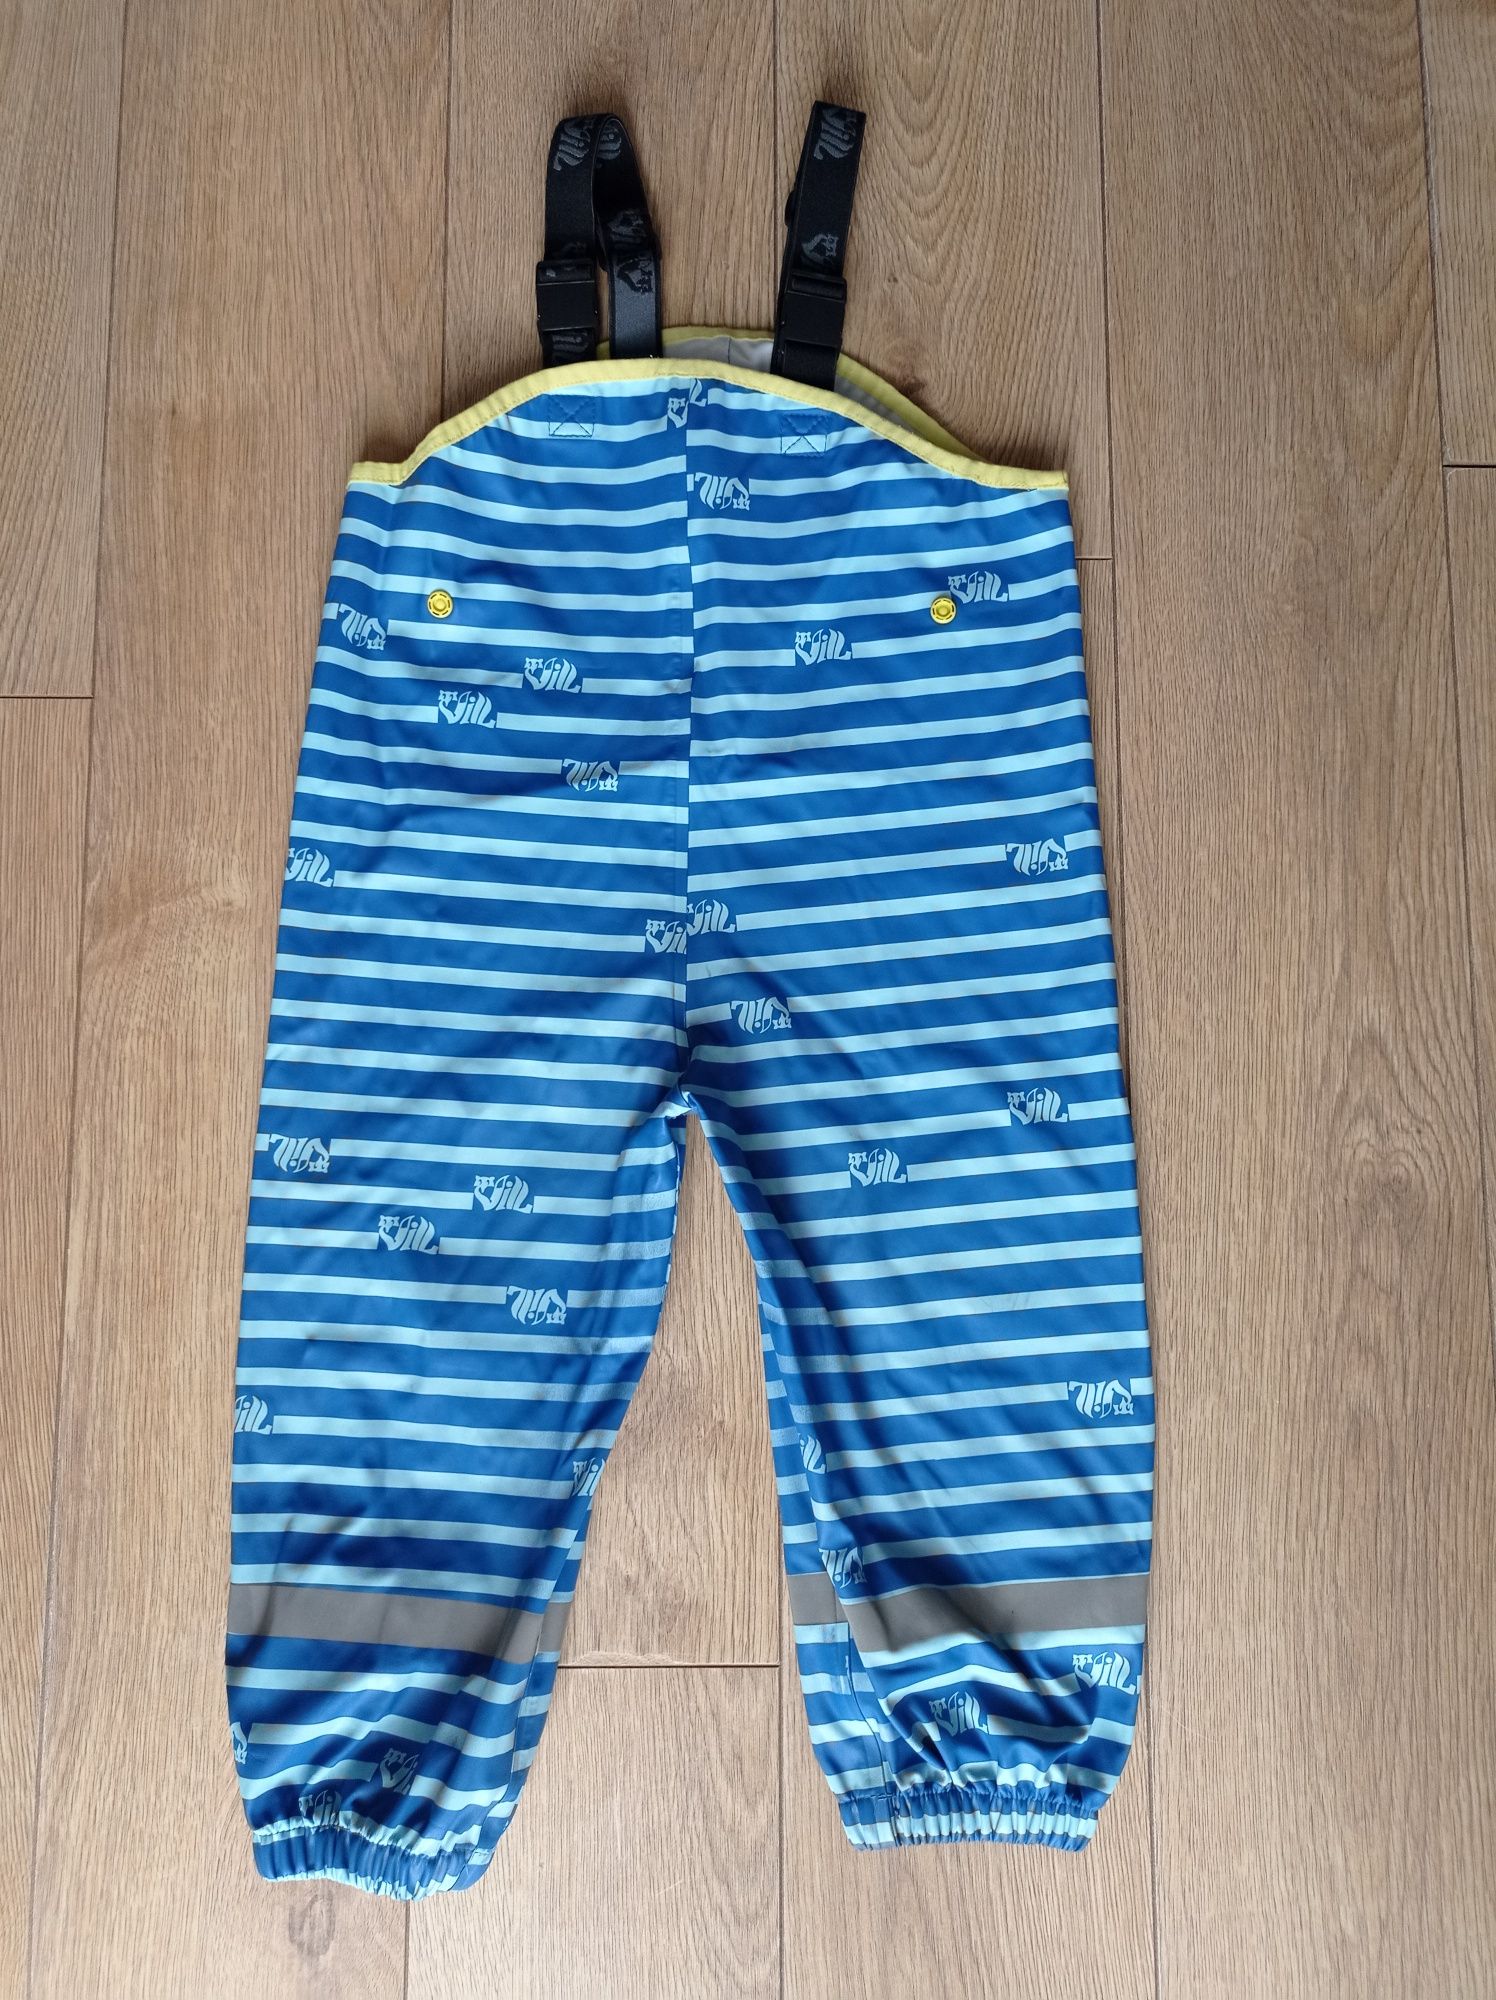 Spodnie przeciwdeszczowe wodery dla chłopca 92-98